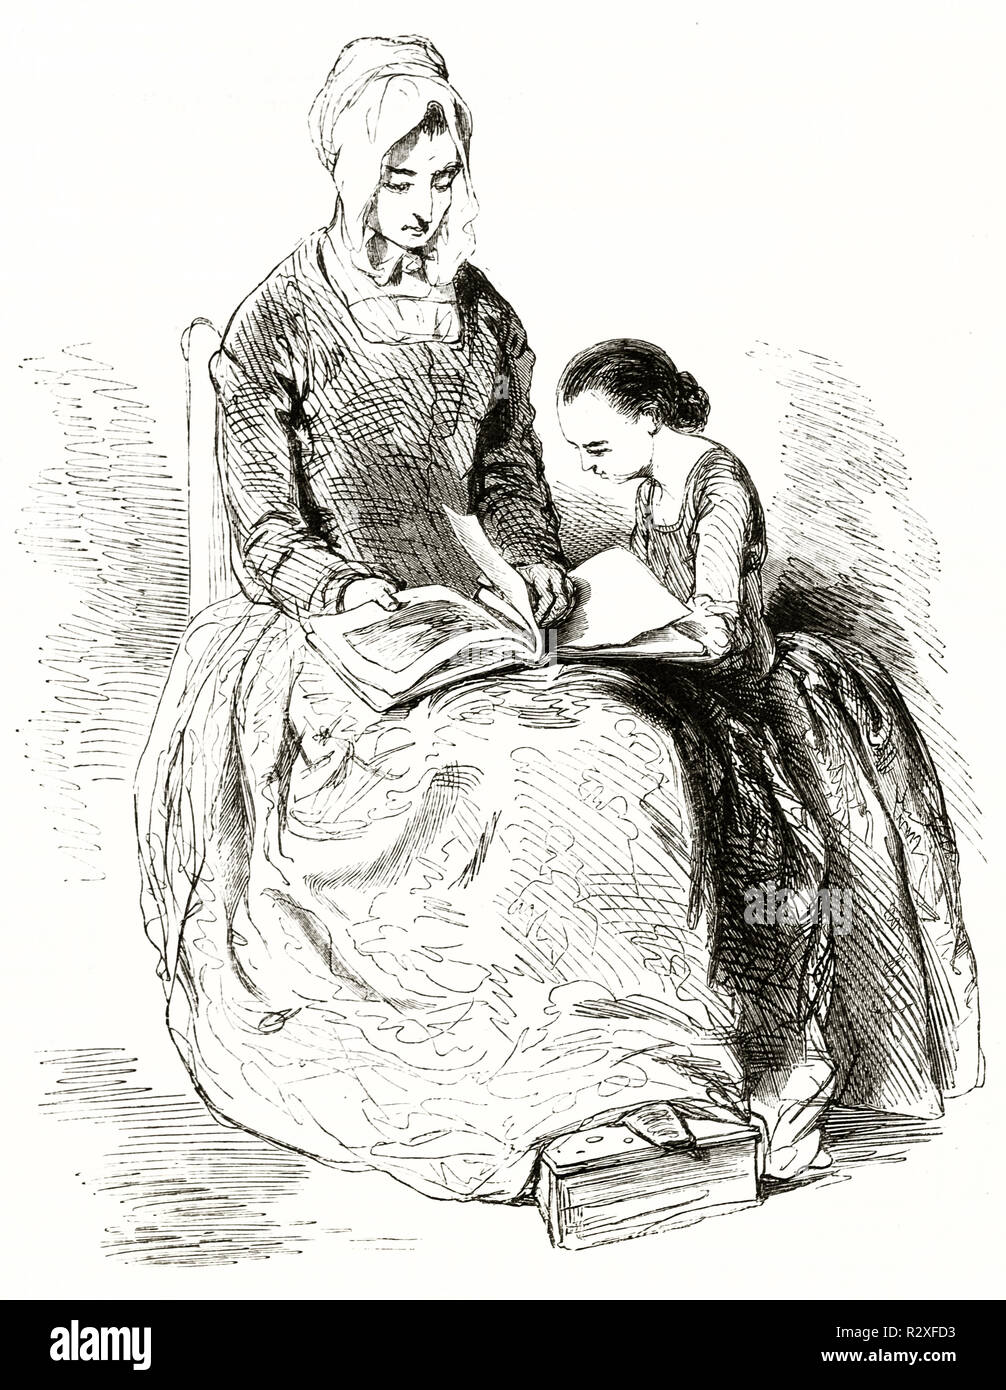 Ilustración antigua de la mujer y la niña mostrando un libro de imágenes. Por Gavarni, publ. en el Magasin pintoresco, París, 1846 Foto de stock